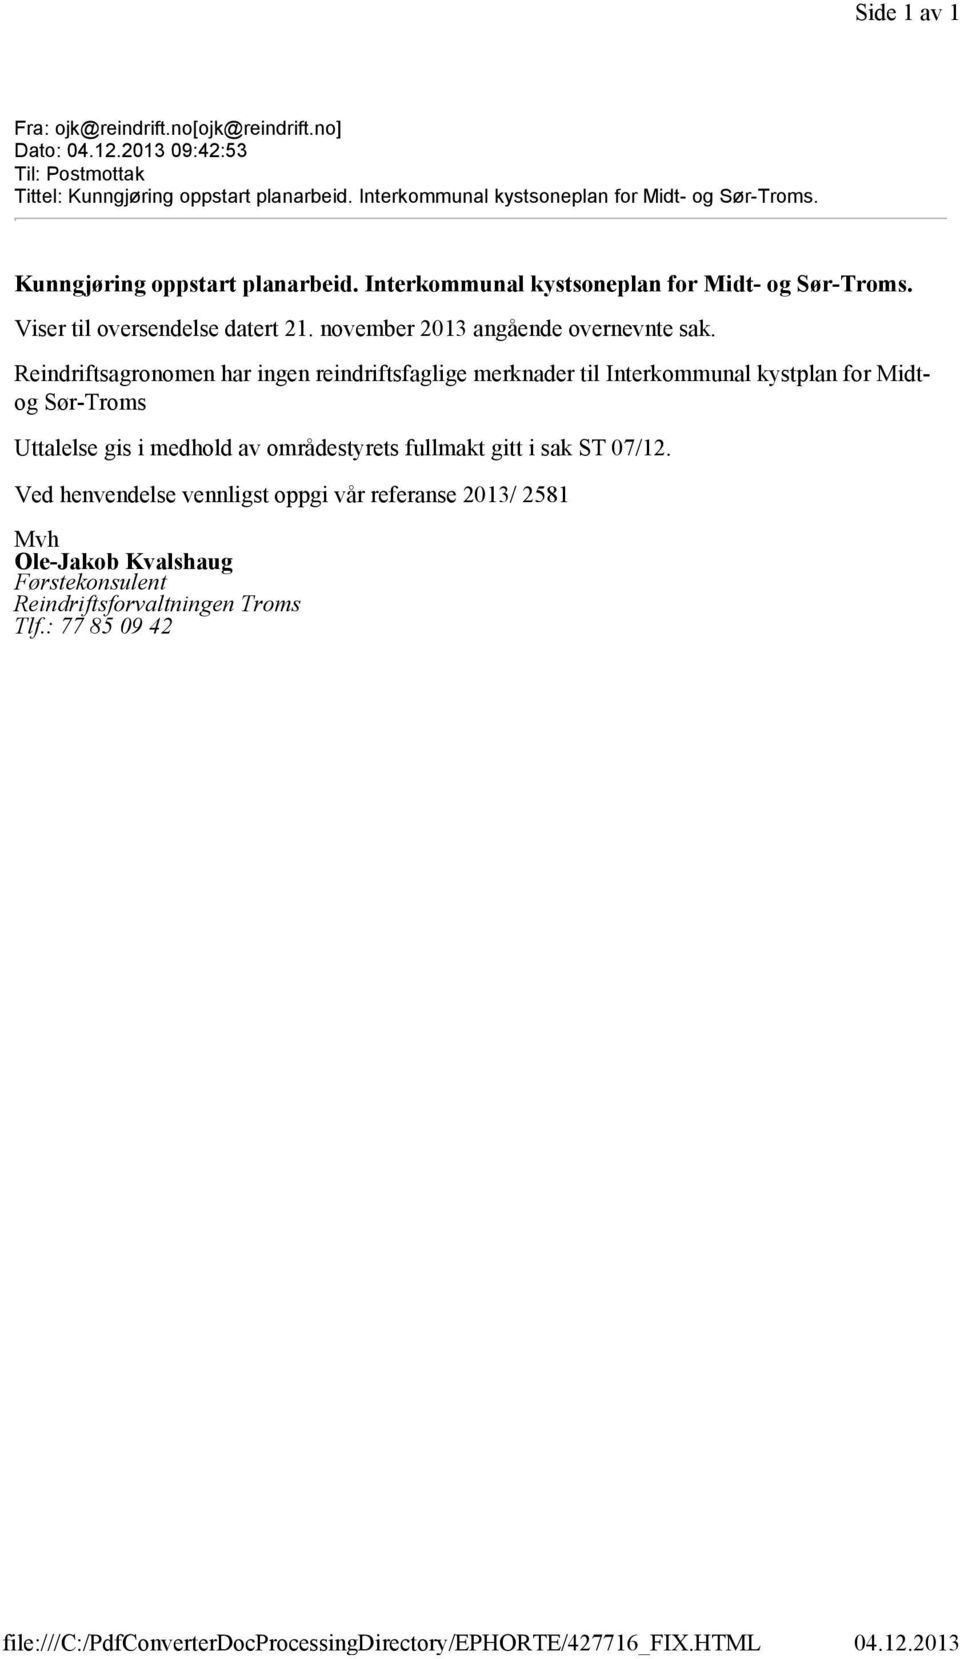 Reindriftsagronomen har ingen reindriftsfaglige merknader til Interkommunal kystplan for Midtog Sør-Troms Uttalelse gis i medhold av områdestyrets fullmakt gitt i sak ST 07/12.